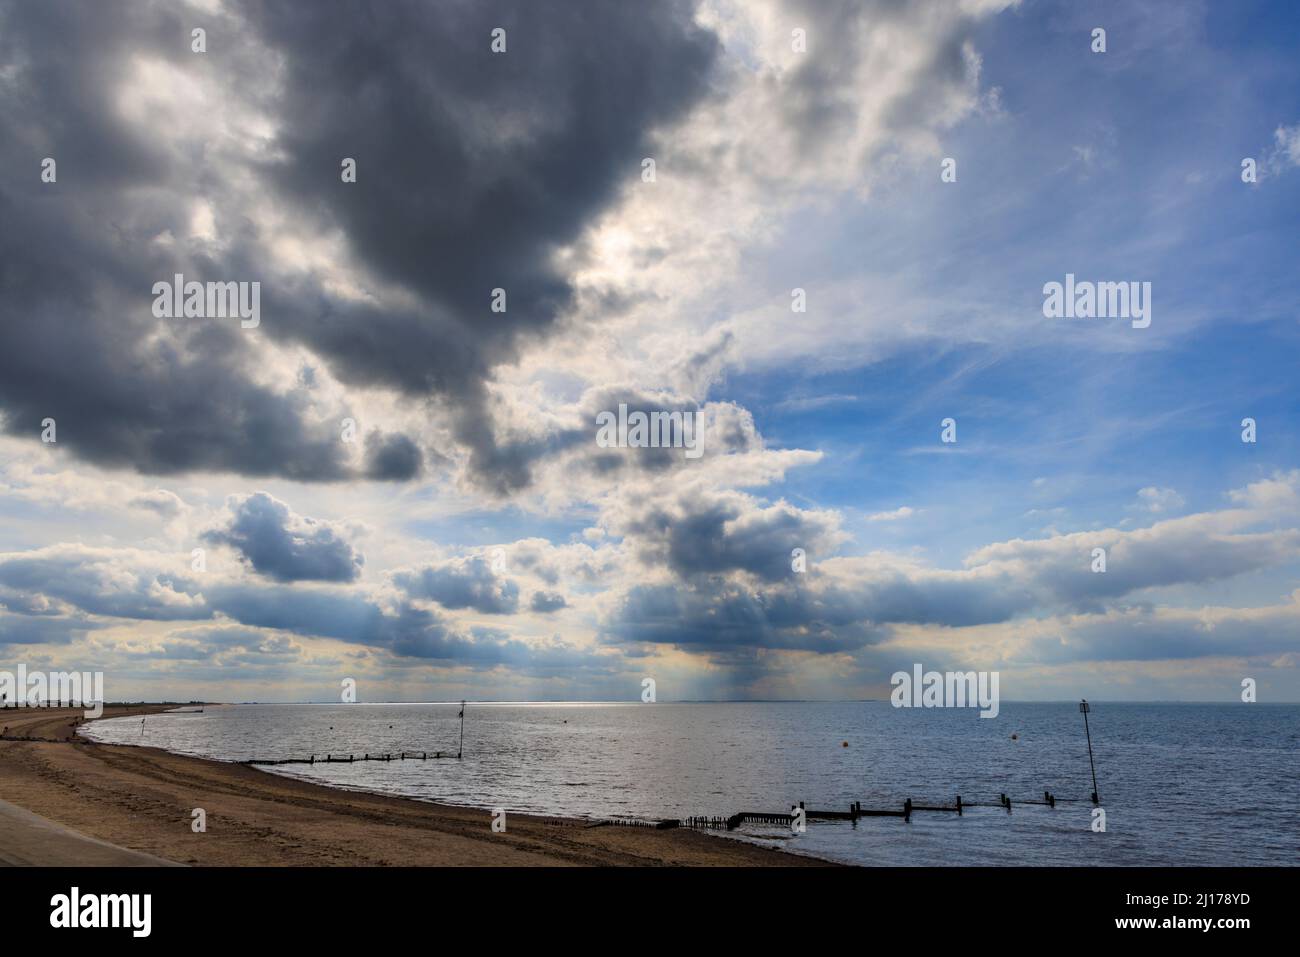 Le nuvole della tempesta si raccolgono su North Beach a Heacham, un villaggio costiero nel Norfolk occidentale, Inghilterra, che domina il Wash Foto Stock